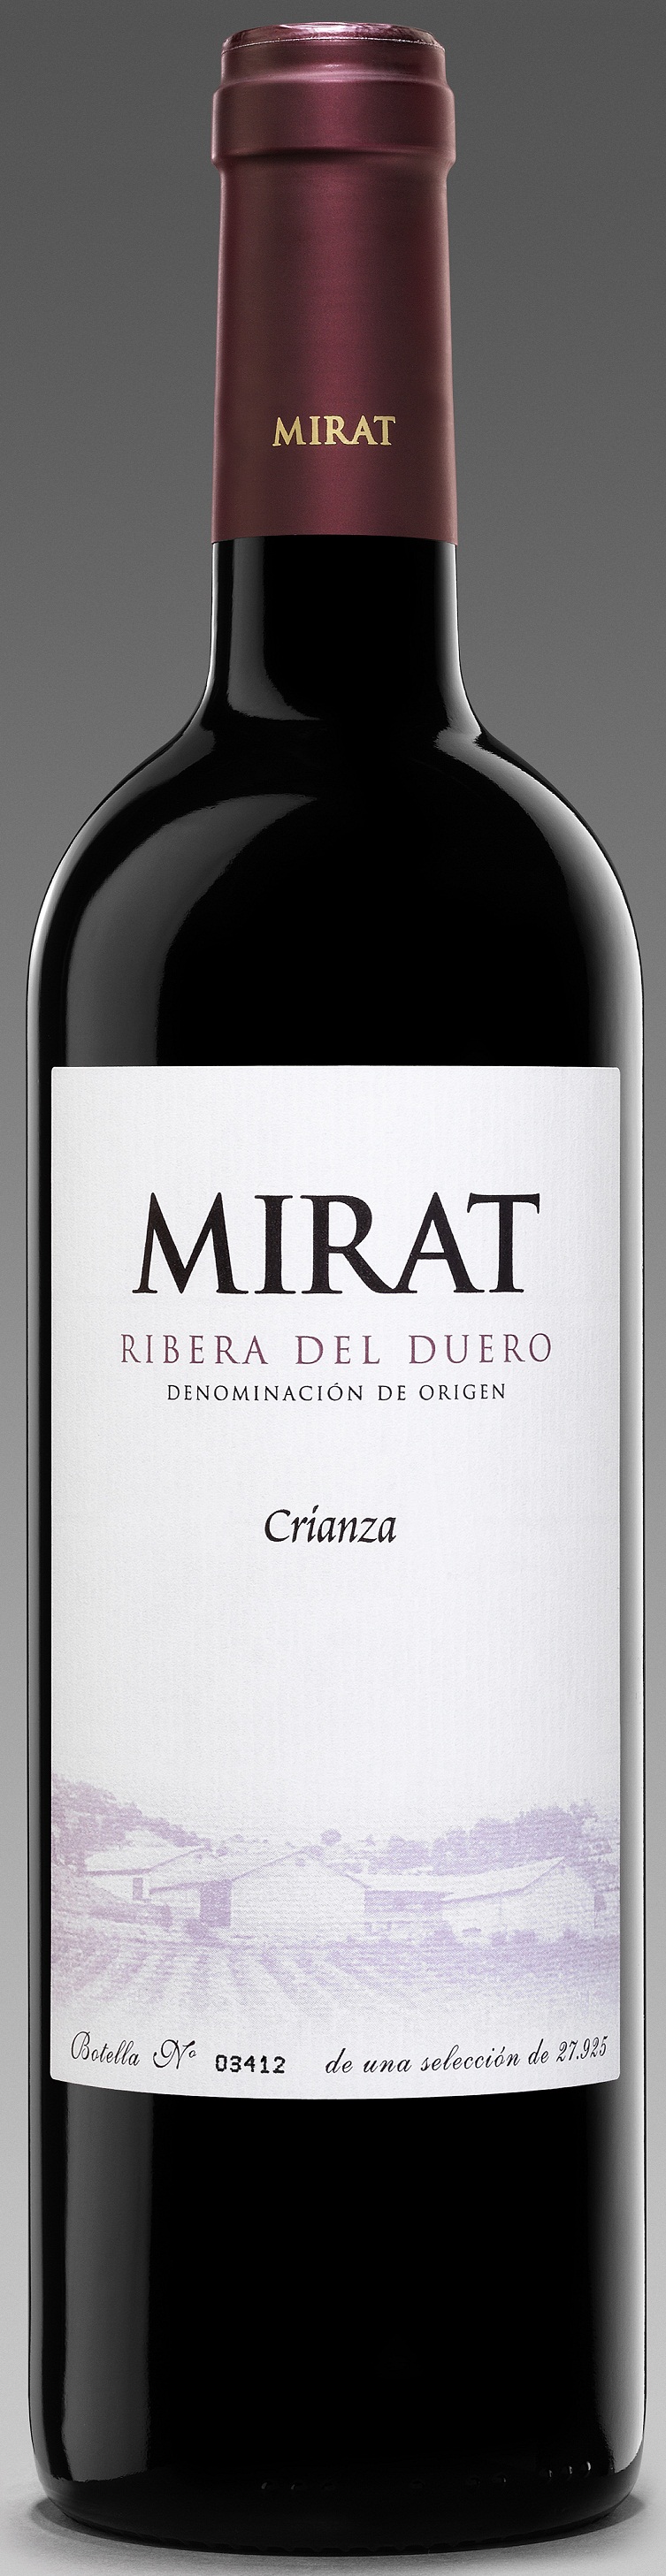 Logo del vino Mirat 2004 Crianza